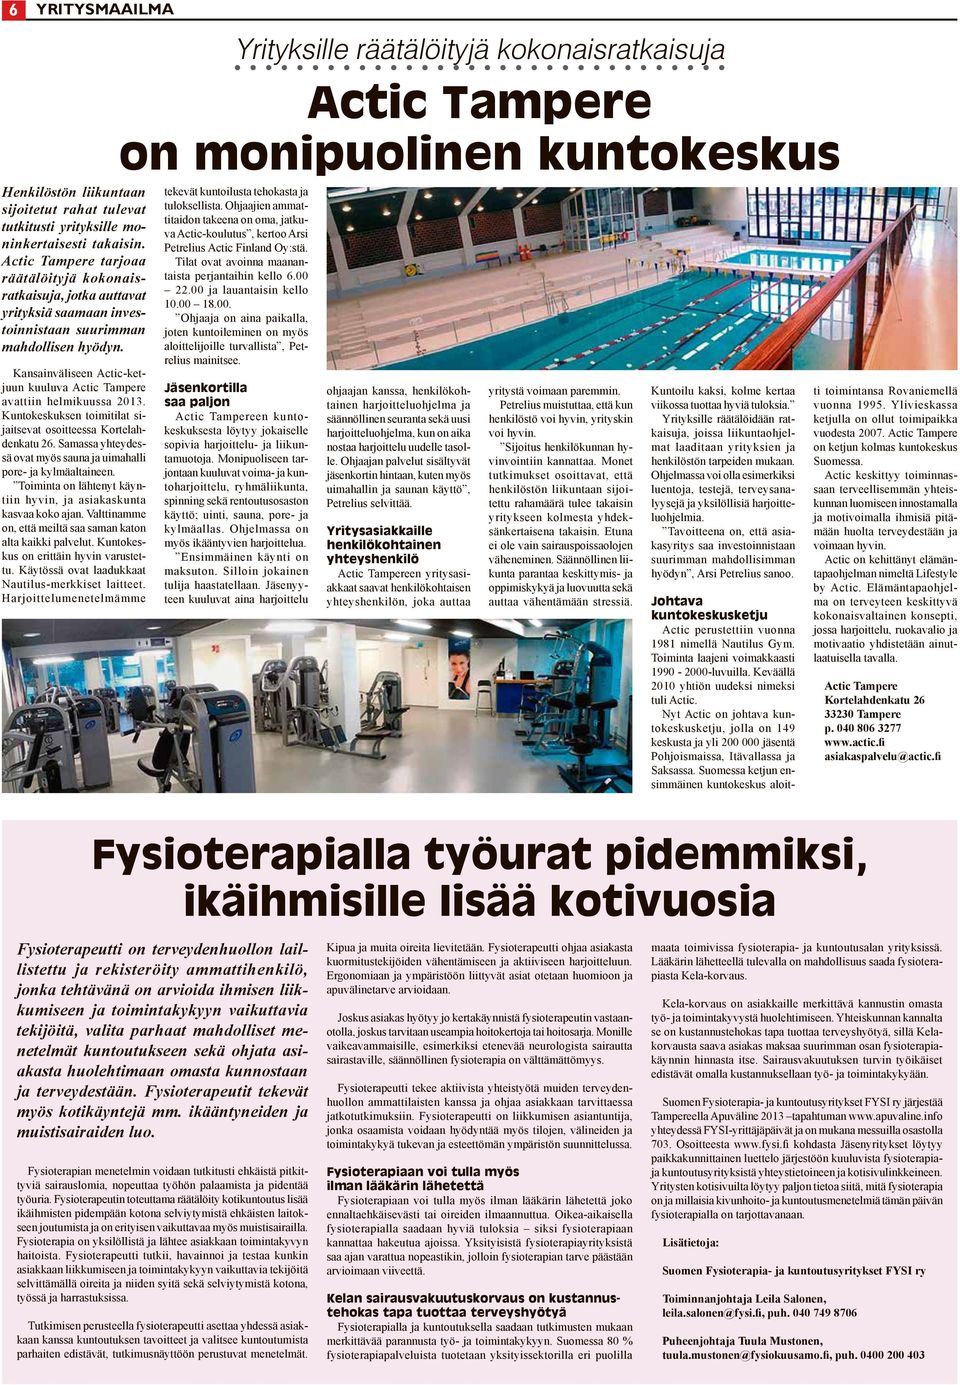 Kansainväliseen Actic-ketjuun kuuluva Actic Tampere avattiin helmikuussa 2013. Kuntokeskuksen toimitilat sijaitsevat osoitteessa Kortelahdenkatu 26.